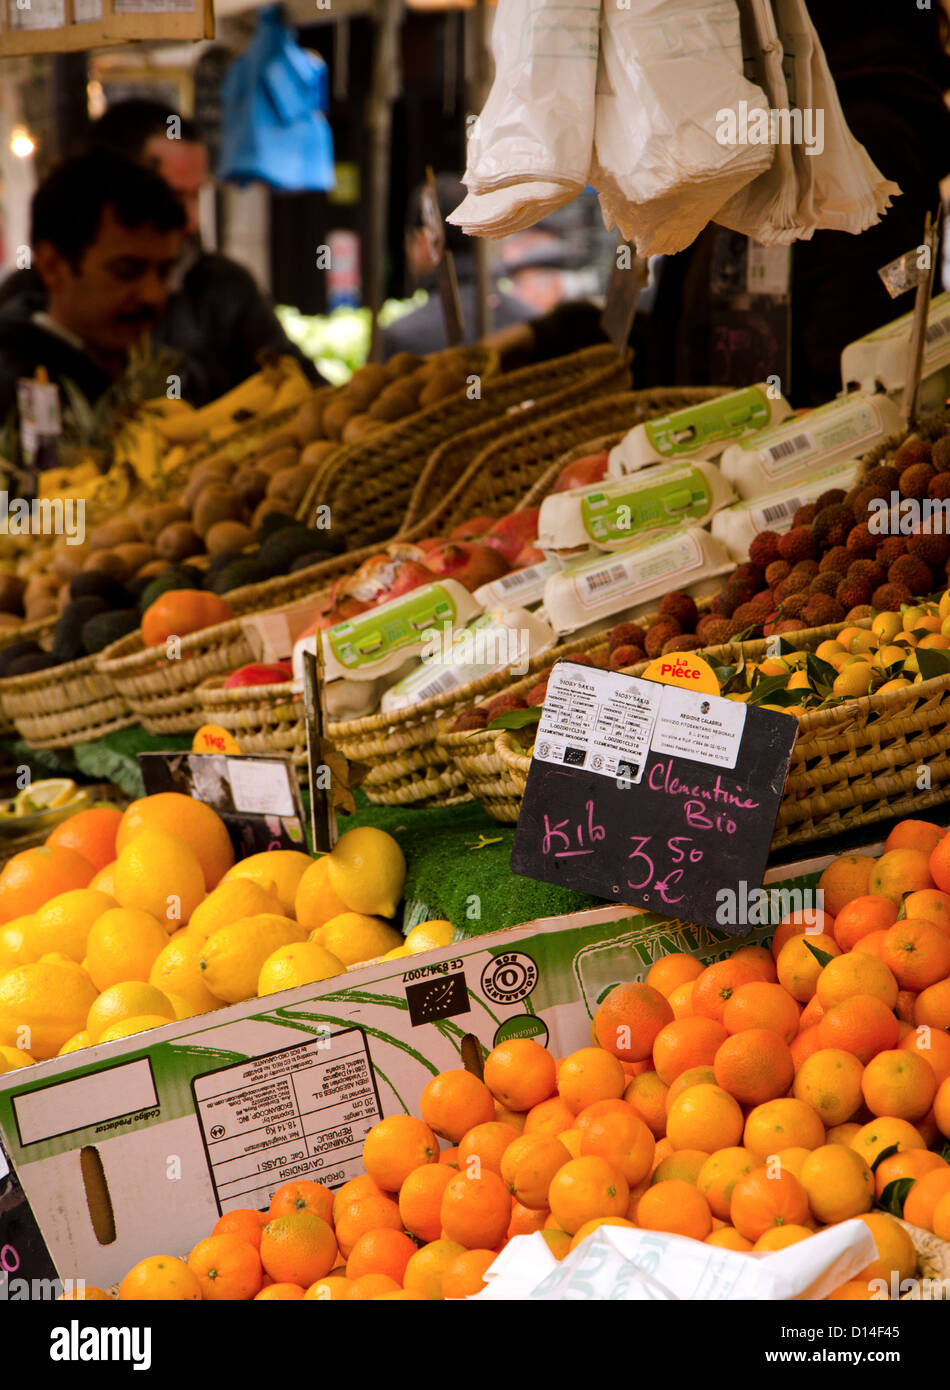 Aligre outdoor Food Market, Markt auf dem Platz der Aligre und Straße, die Rue Aligre. Paris, Frankreich. Obst auf dem Display Aligre Markt. Stockfoto